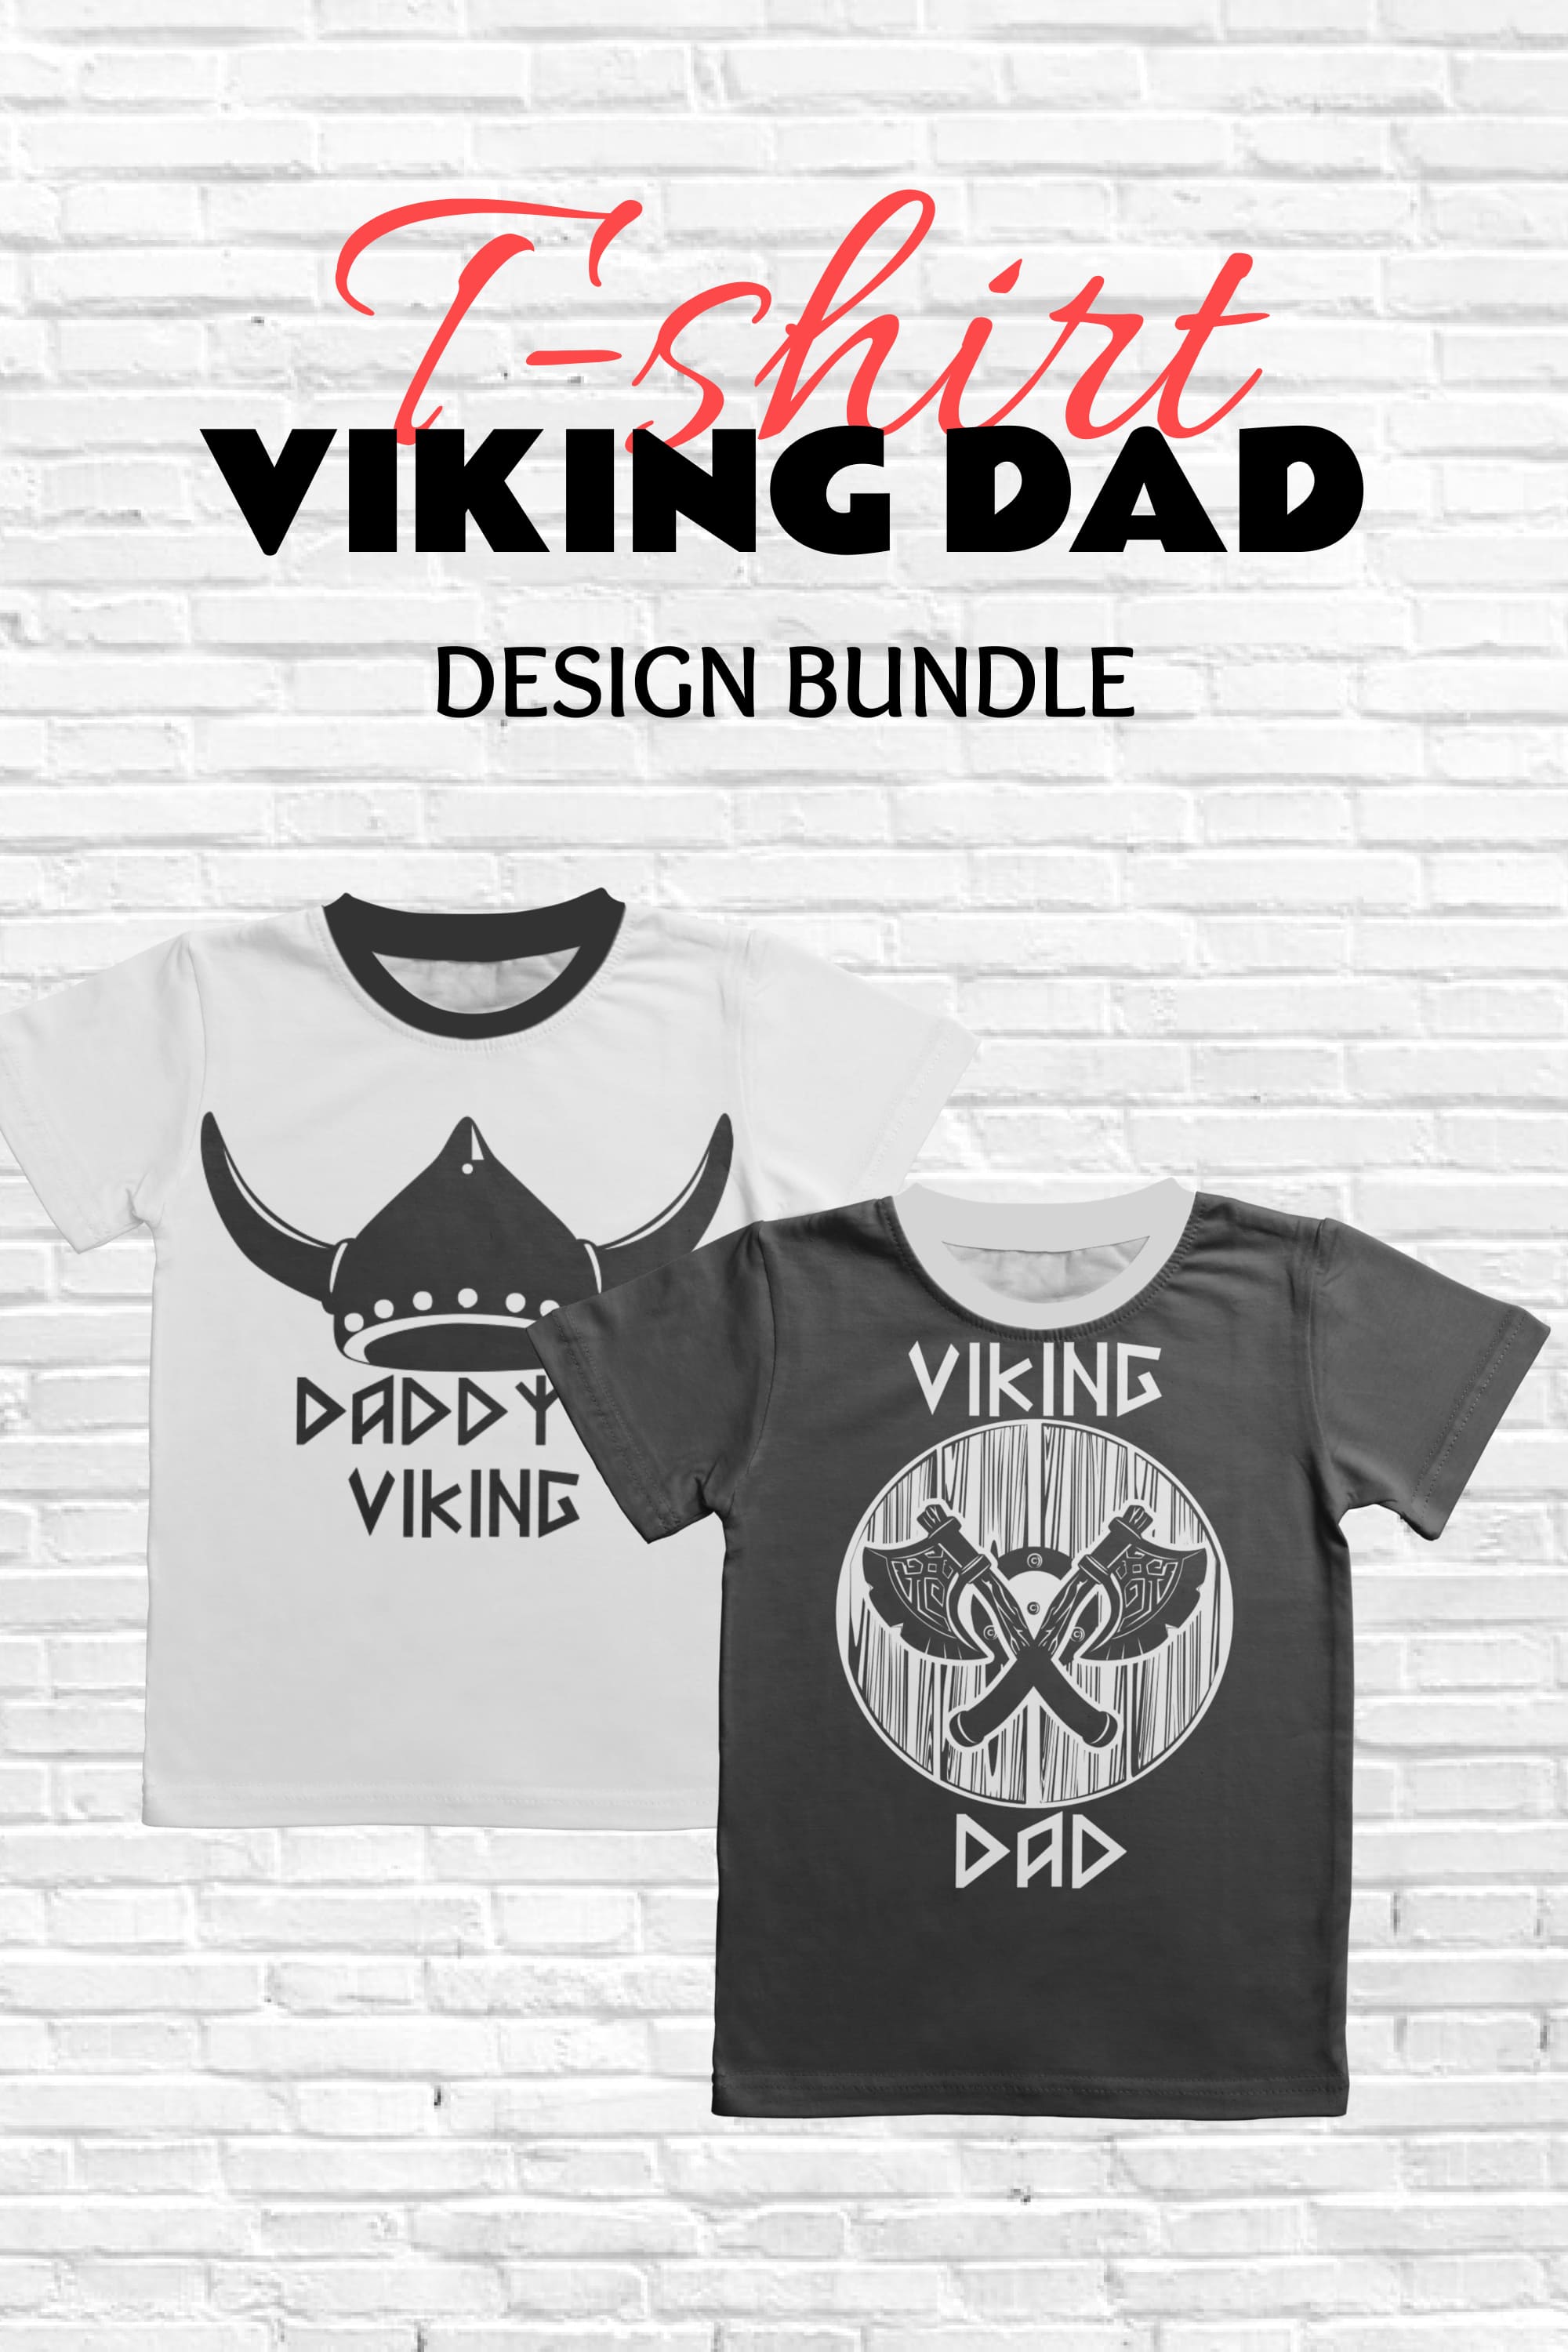 viking dad t shirt designs bundle pinterest 739